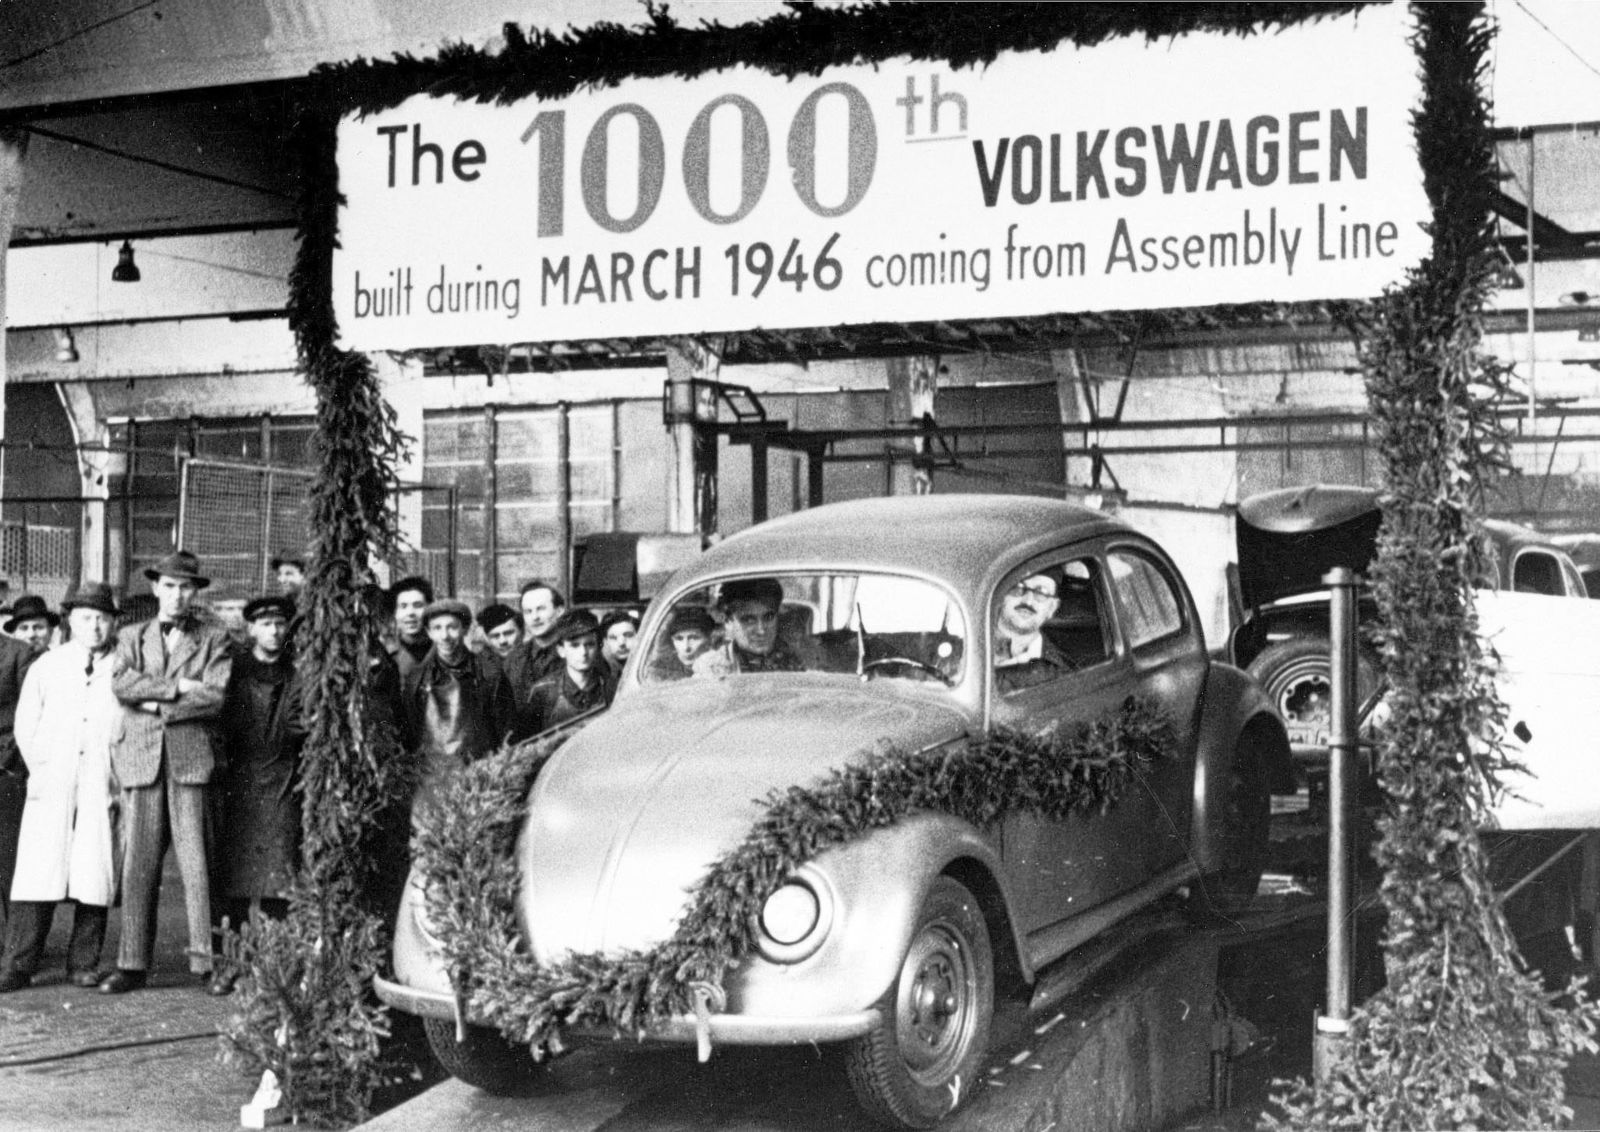 Vor 70 Jahren übergab Großbritannien die Treuhänderschaft über Volkswagen an die Bundesrepublik Deutschland